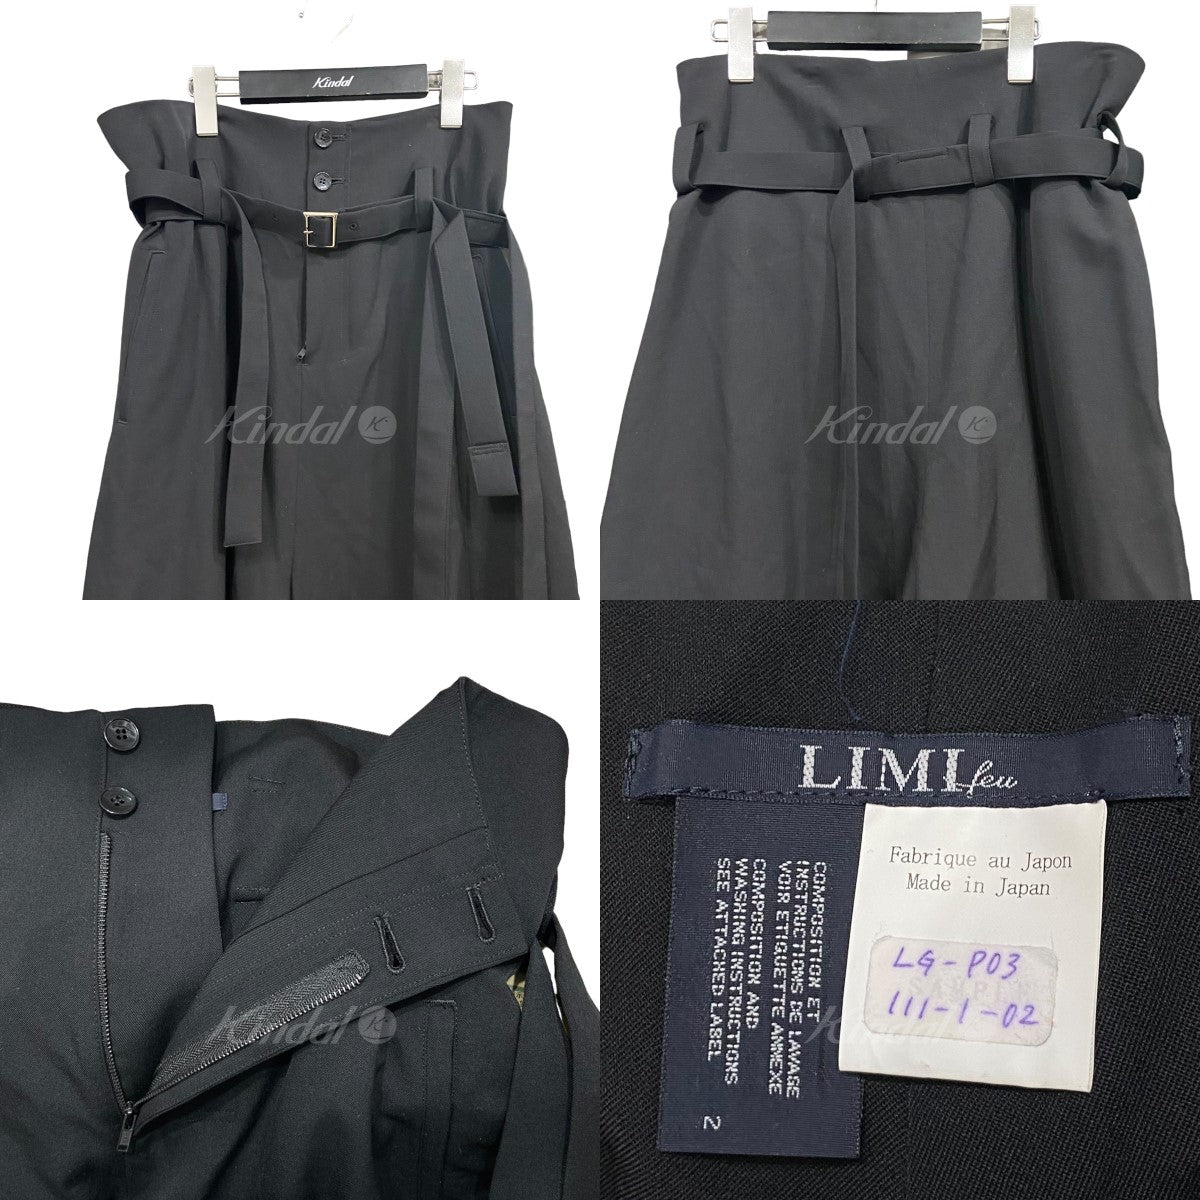 LIMI feu(リミフゥ) ウールギャバジンワイドパンツ LG-P03-111 